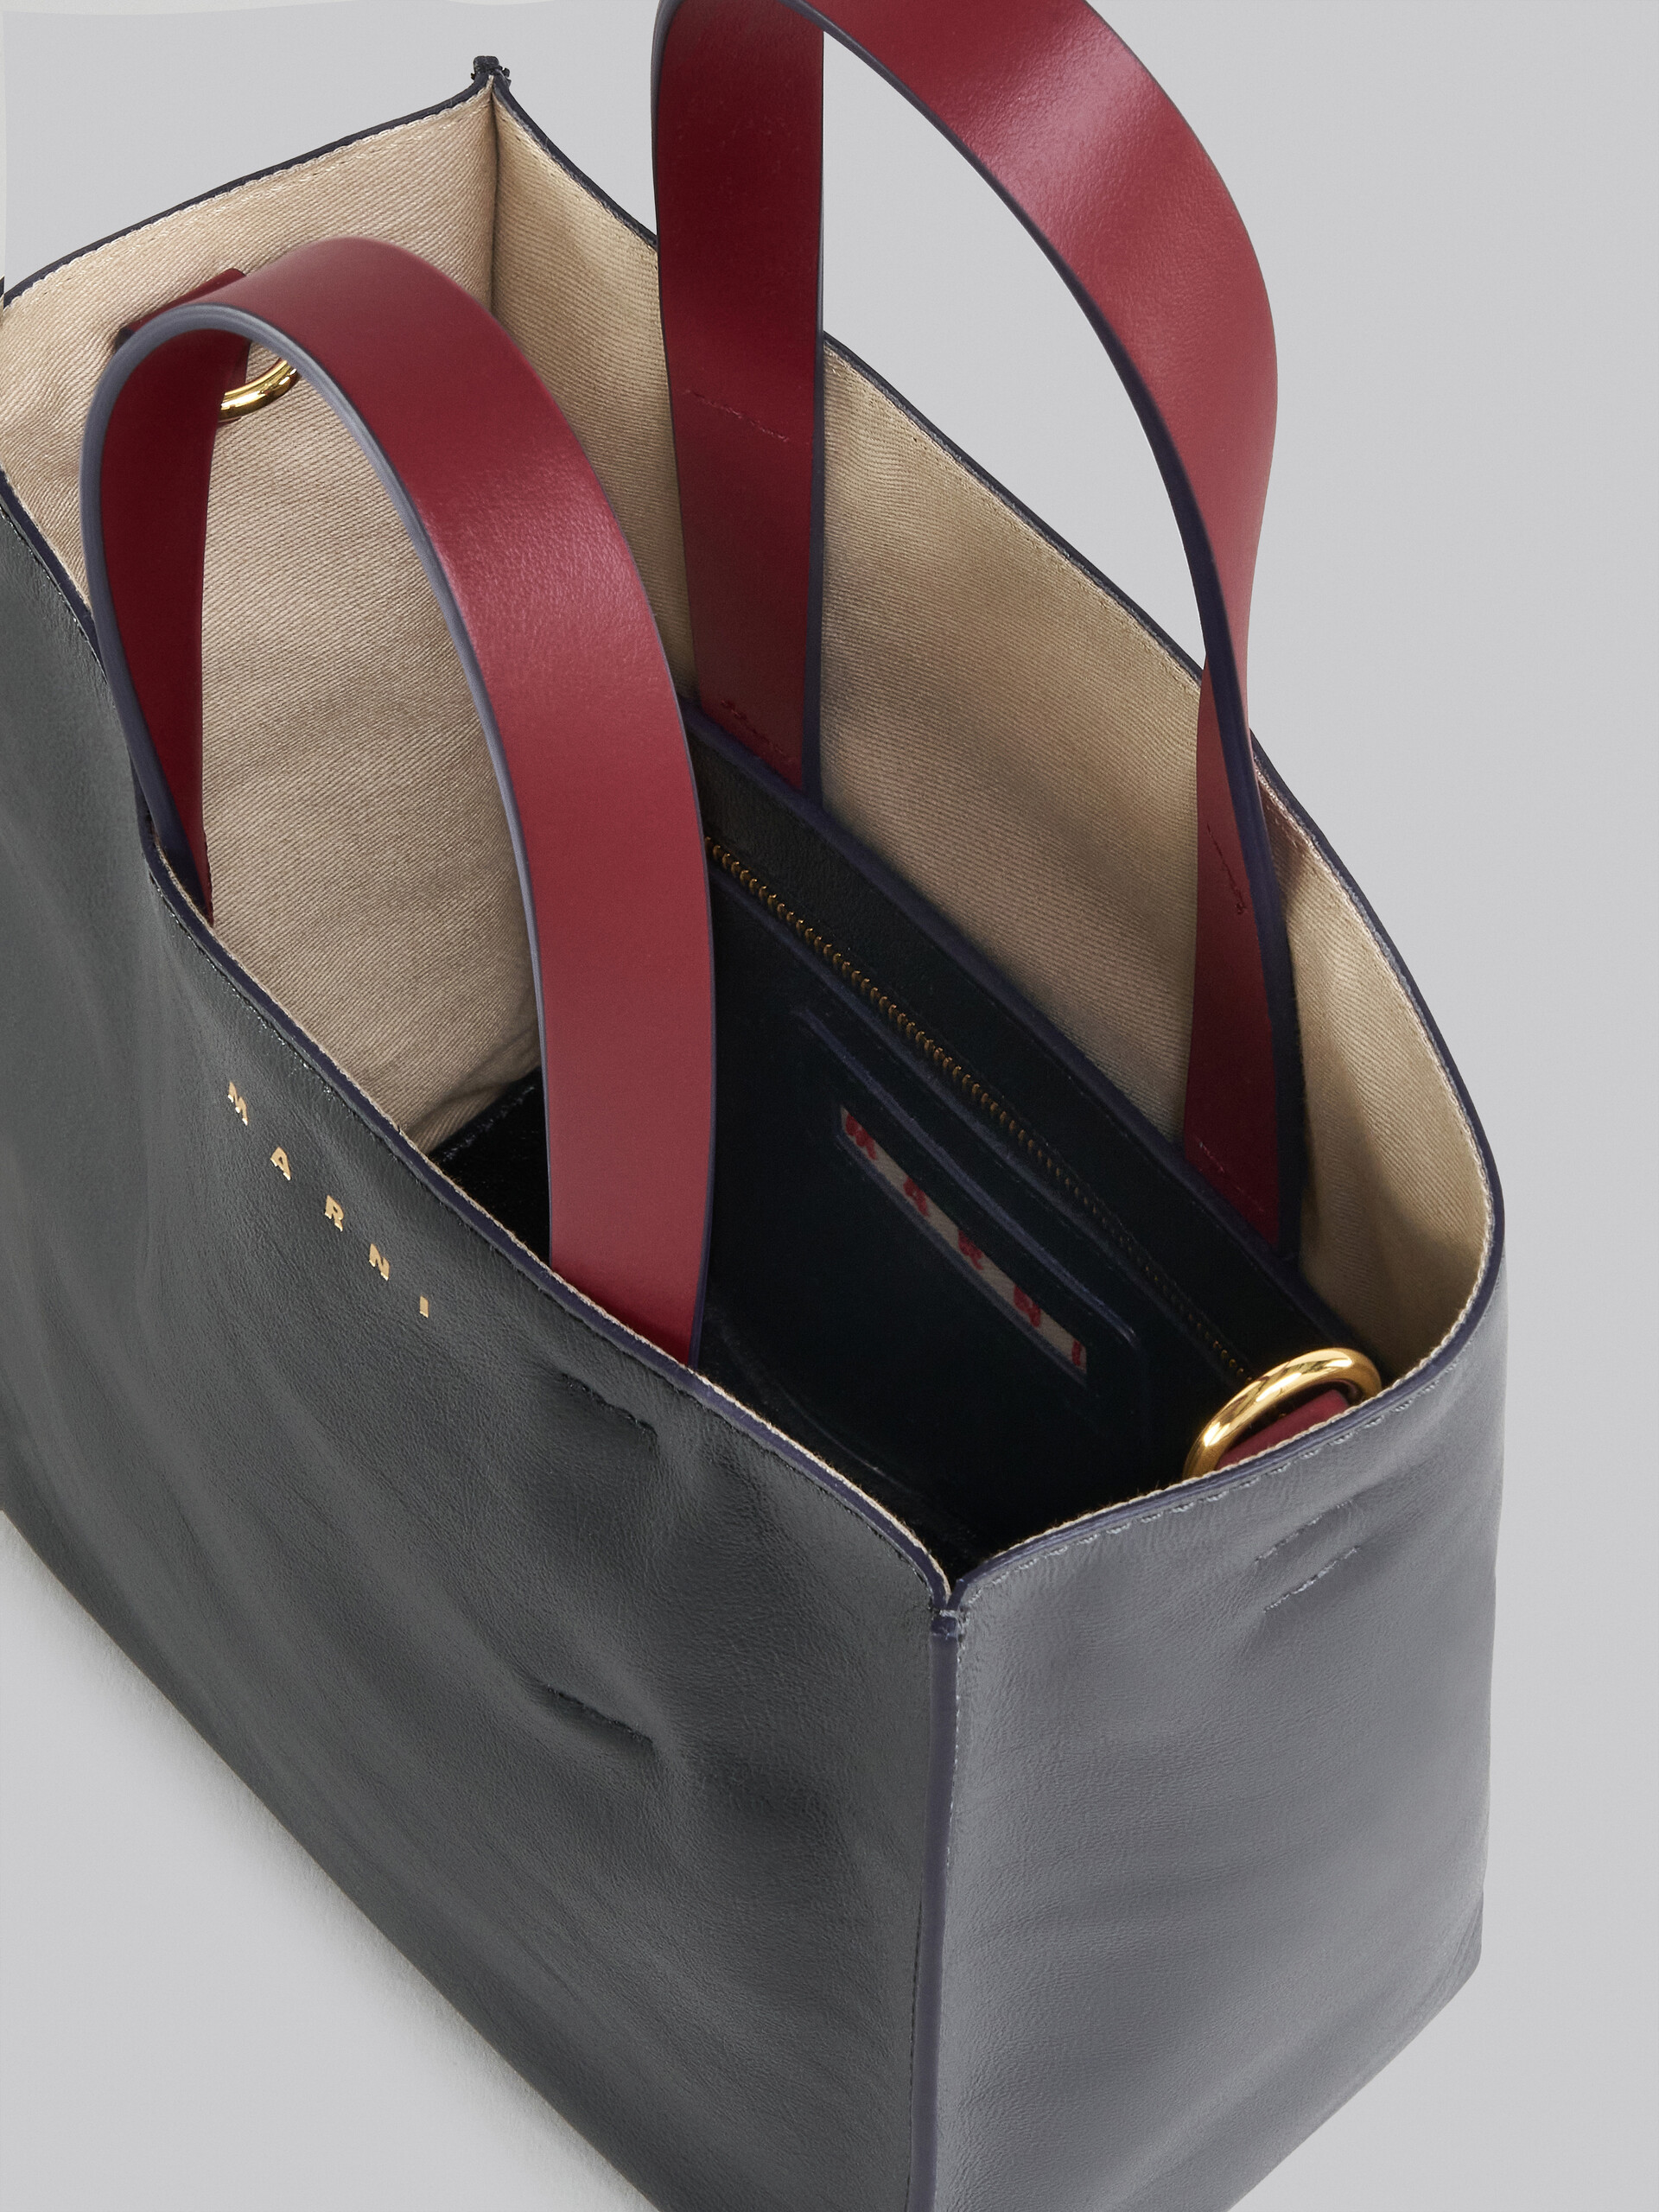 Mini-sac Museo Soft en cuir gris, noir et rouge - Sacs cabas - Image 4